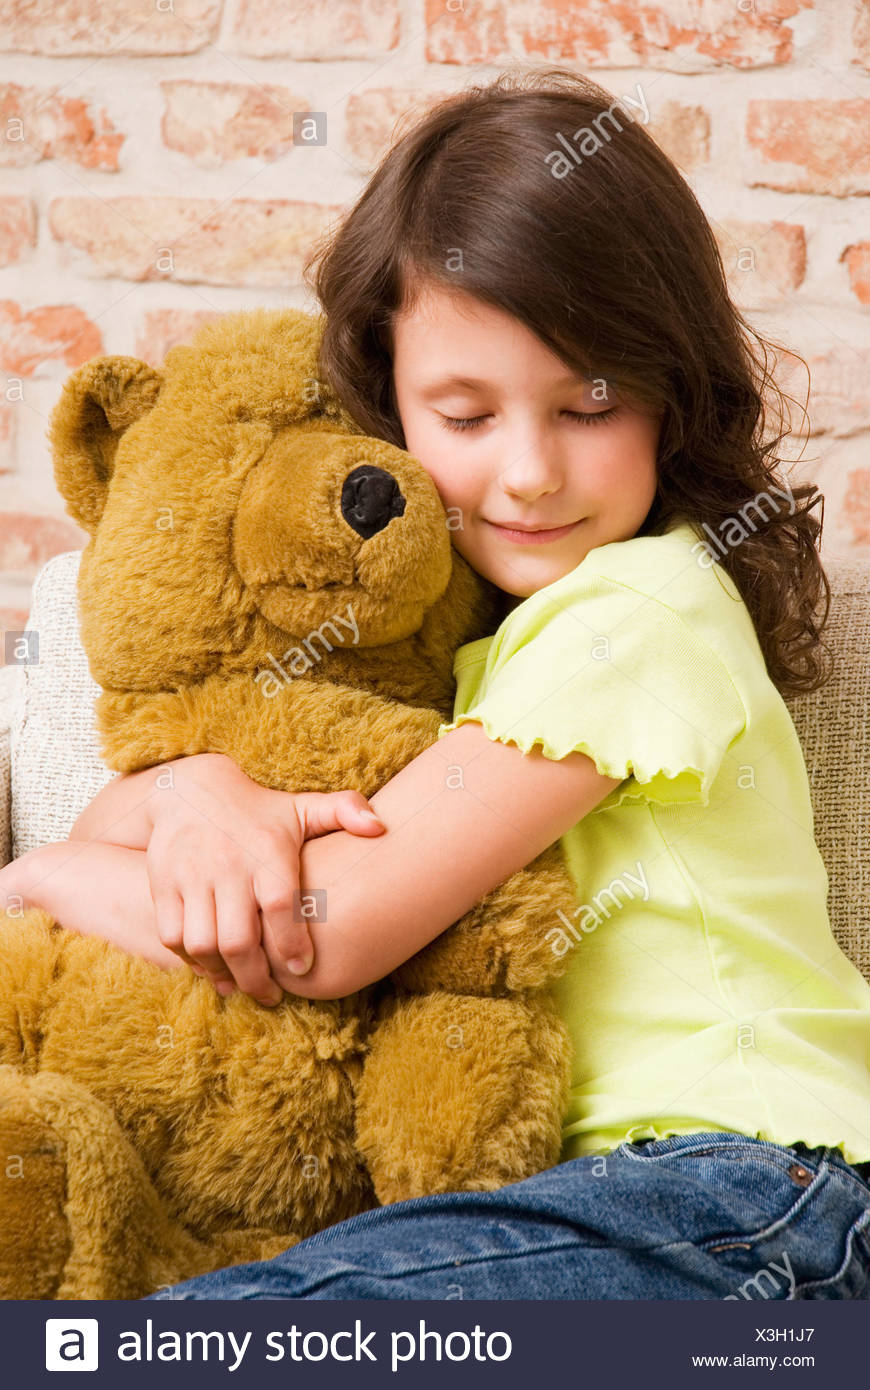 teddy bear with a girl